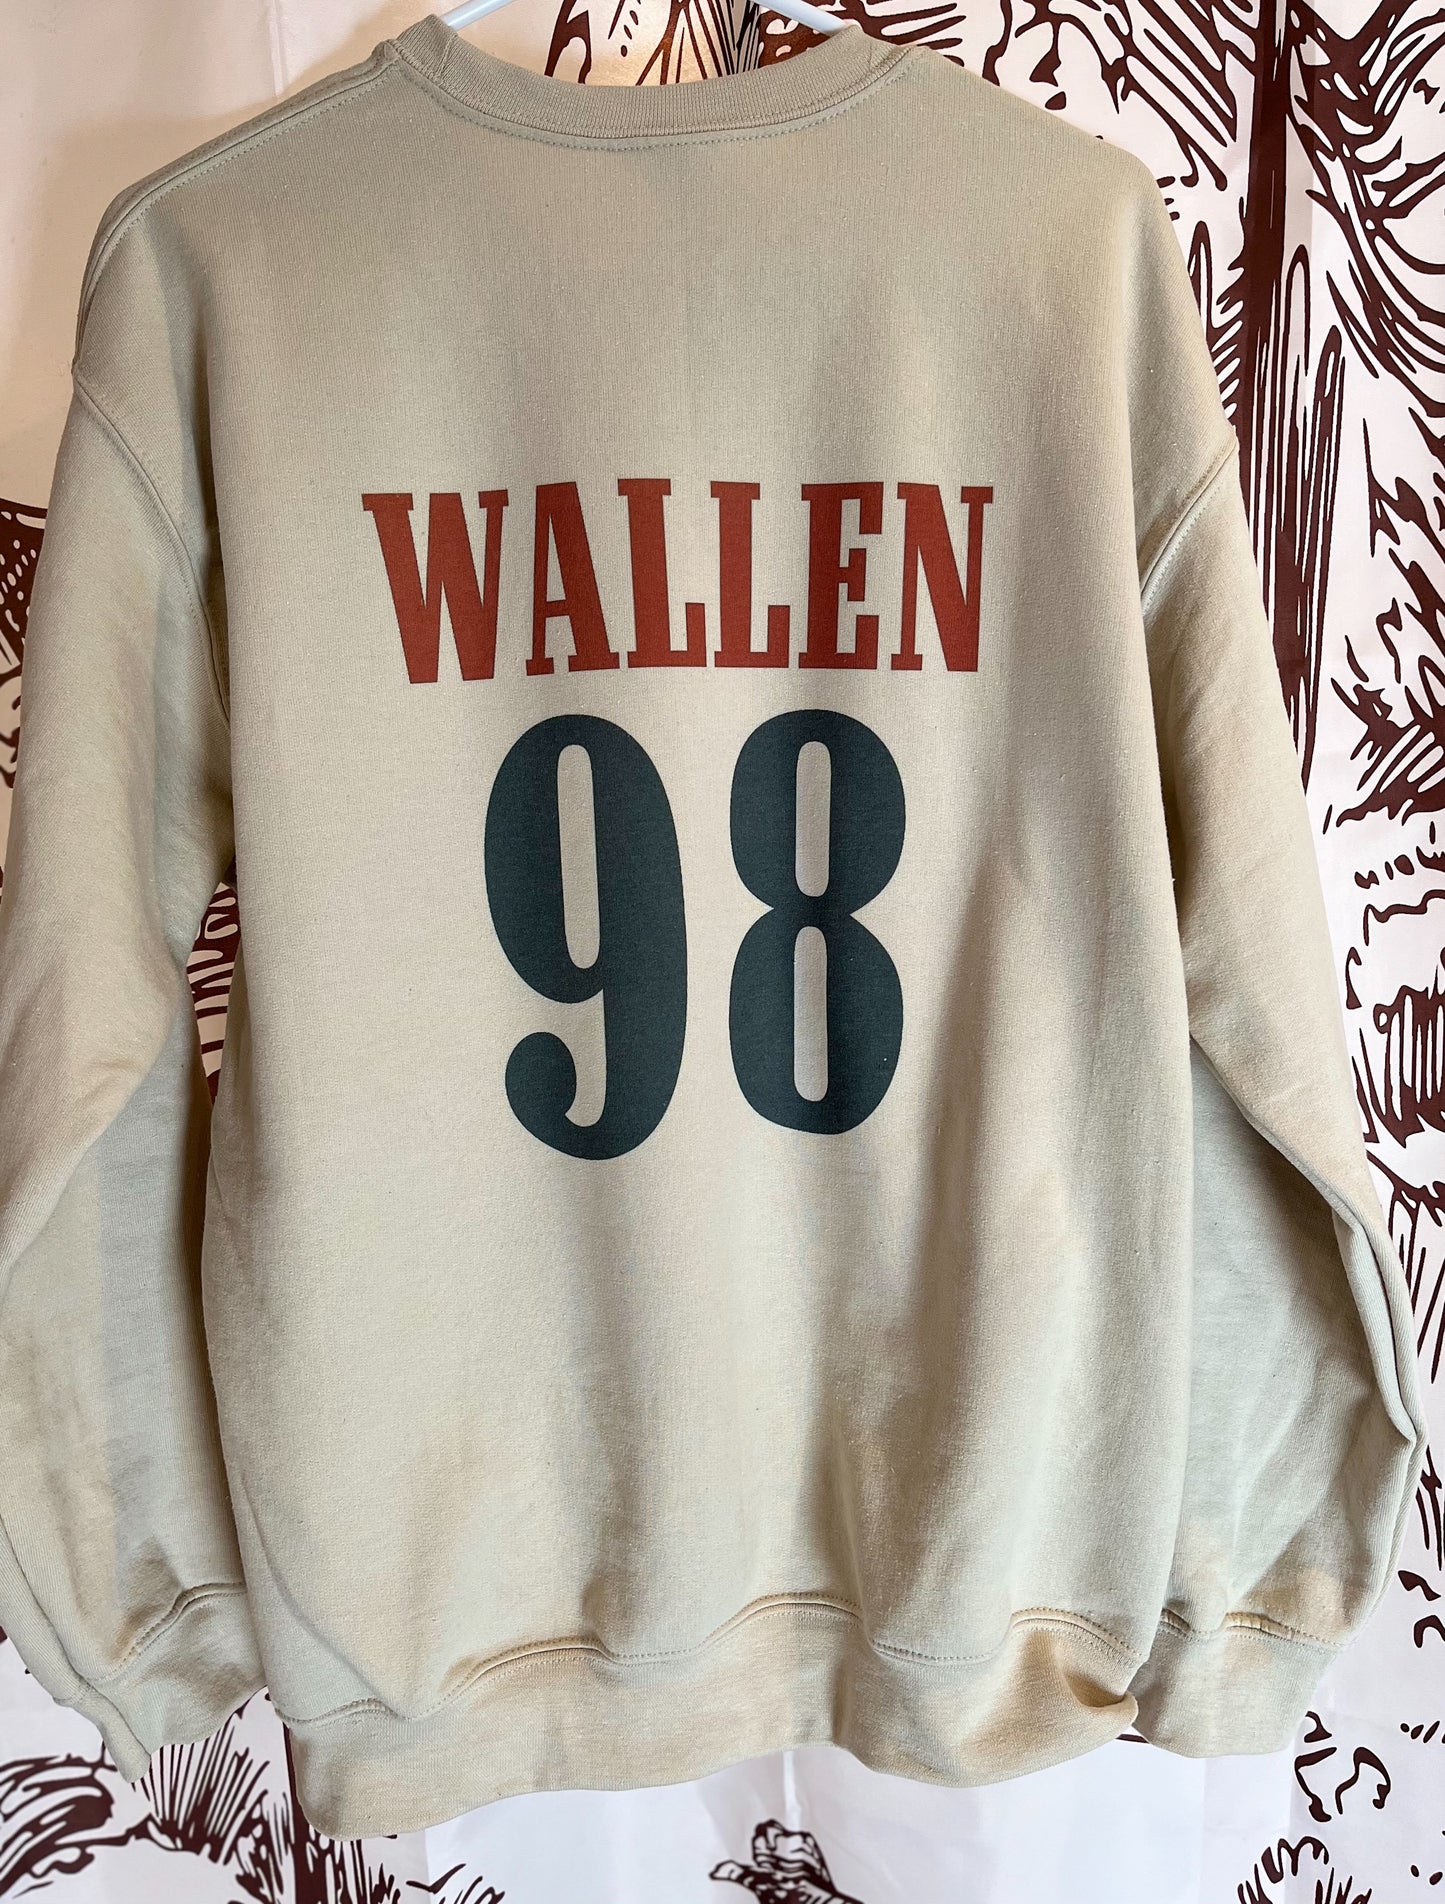 98 Braves Wallen Sweatshirt